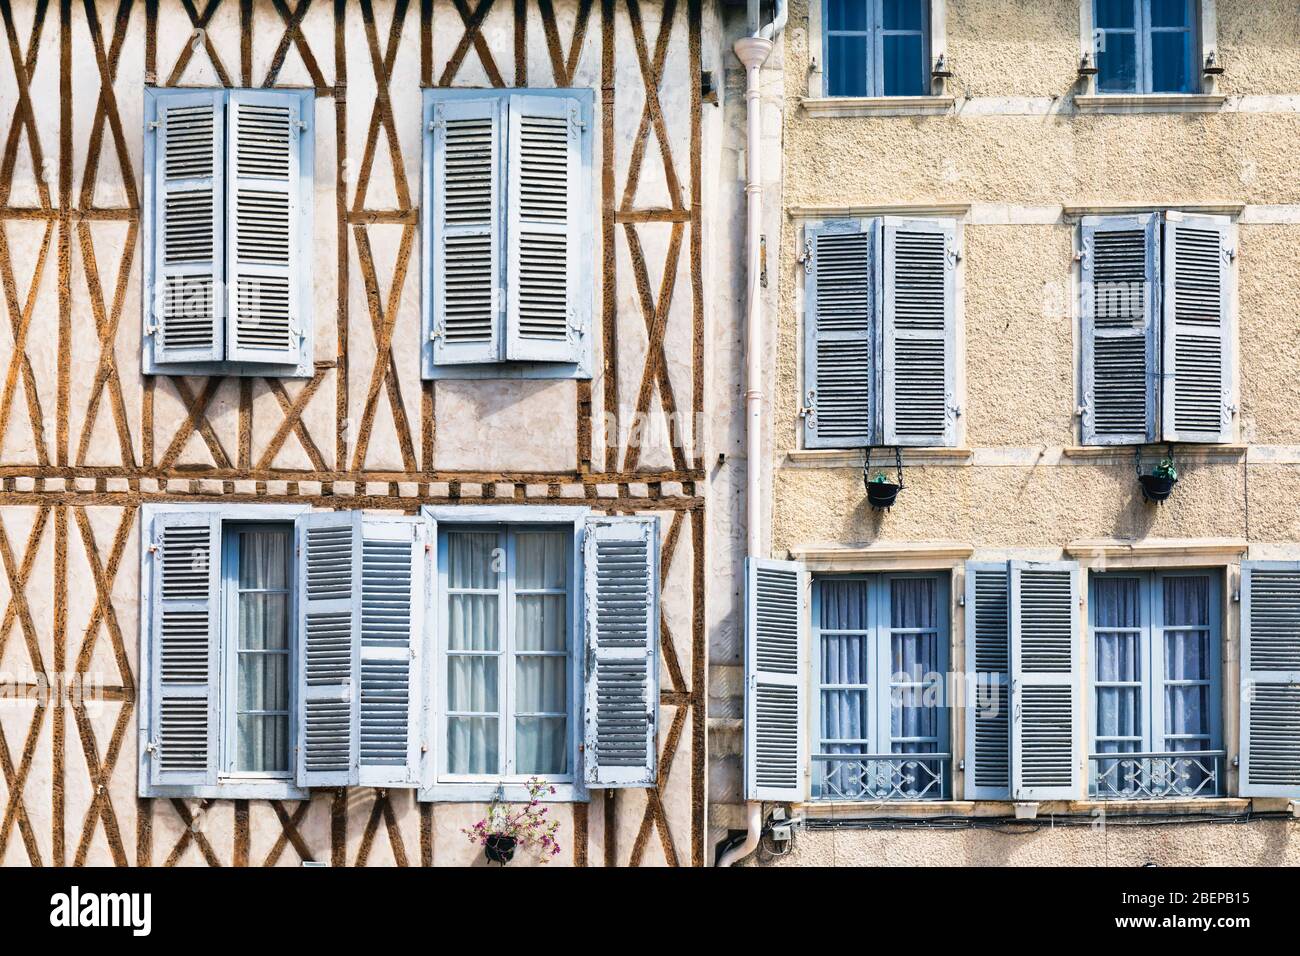 Bâtiment avec fenêtres à volets, Pau, Pyrénées-Atlantiques, Nouvelle-Aquitaine, France. Banque D'Images